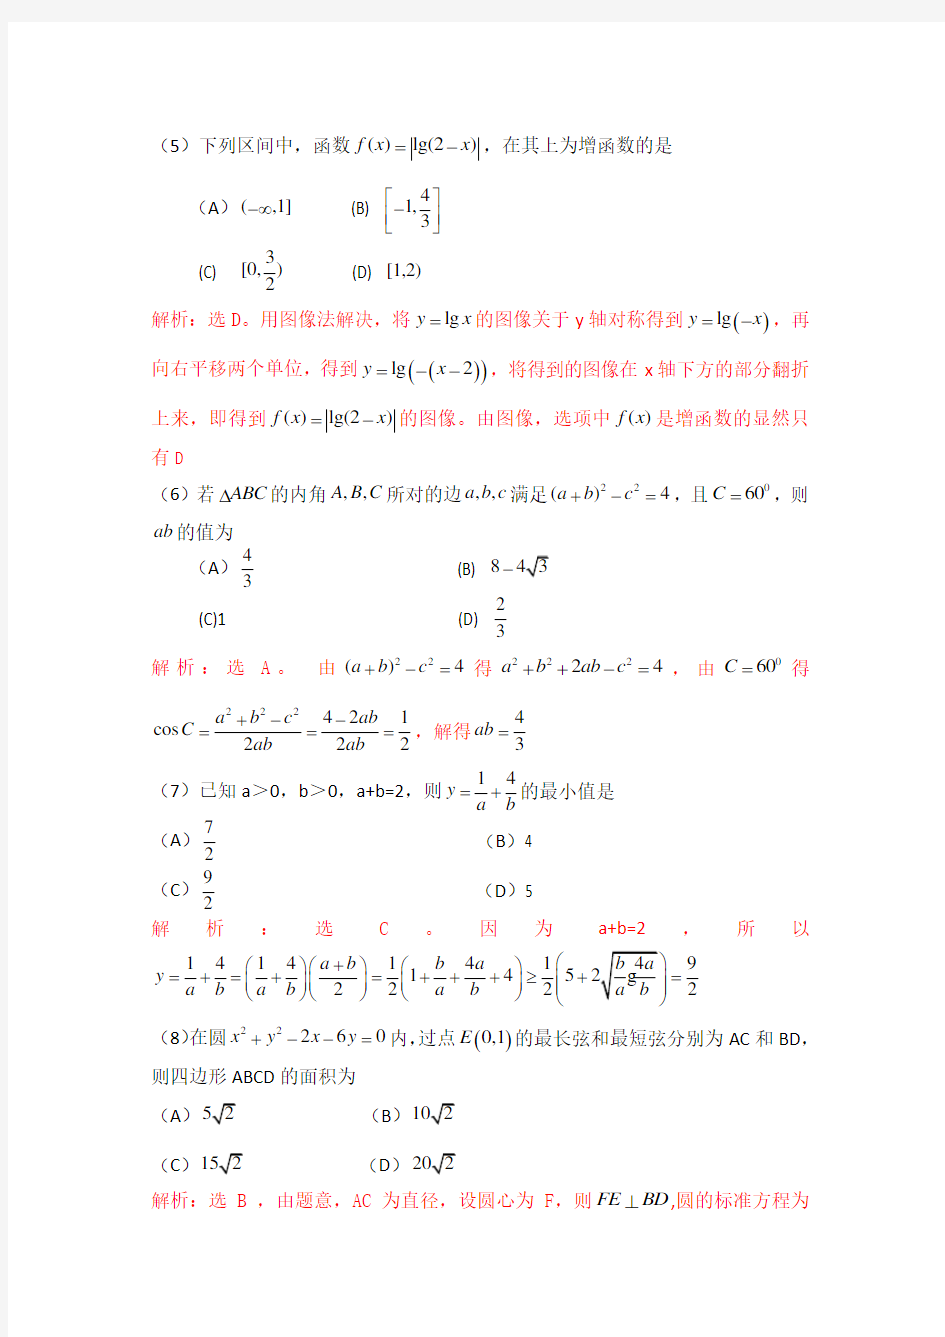 2011年重庆高考理科数学试卷及答案详解 WORD版(答案超级详细)